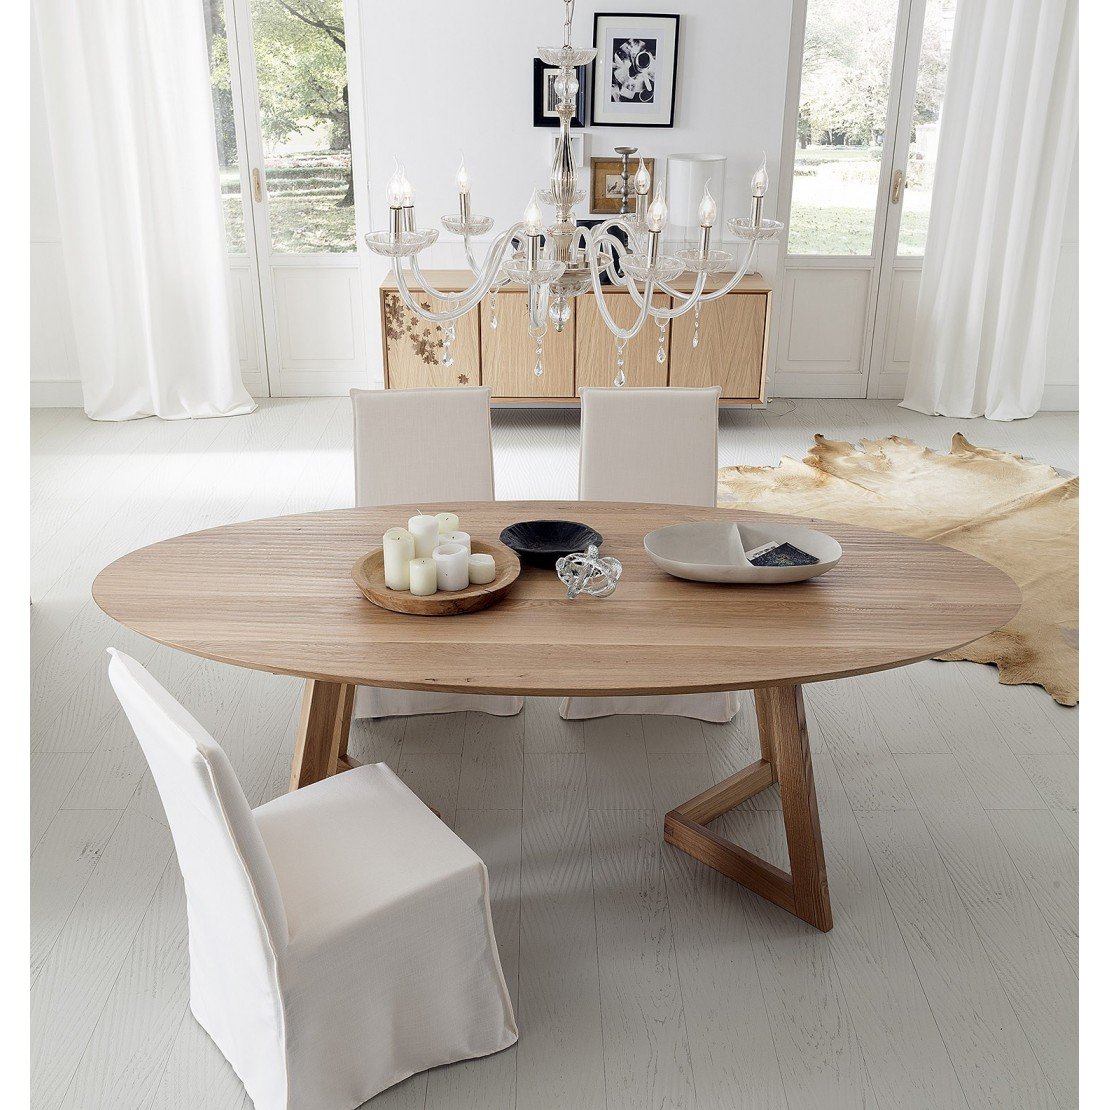 Дизайн кухонного стола. Круглый стол AMCLASSIC aim Dining Table. Стол alta Corte lb-ta7928. Обеденный стол Sierra Dining Table - whitewashed. Обеденный стол Палладиум круглый.